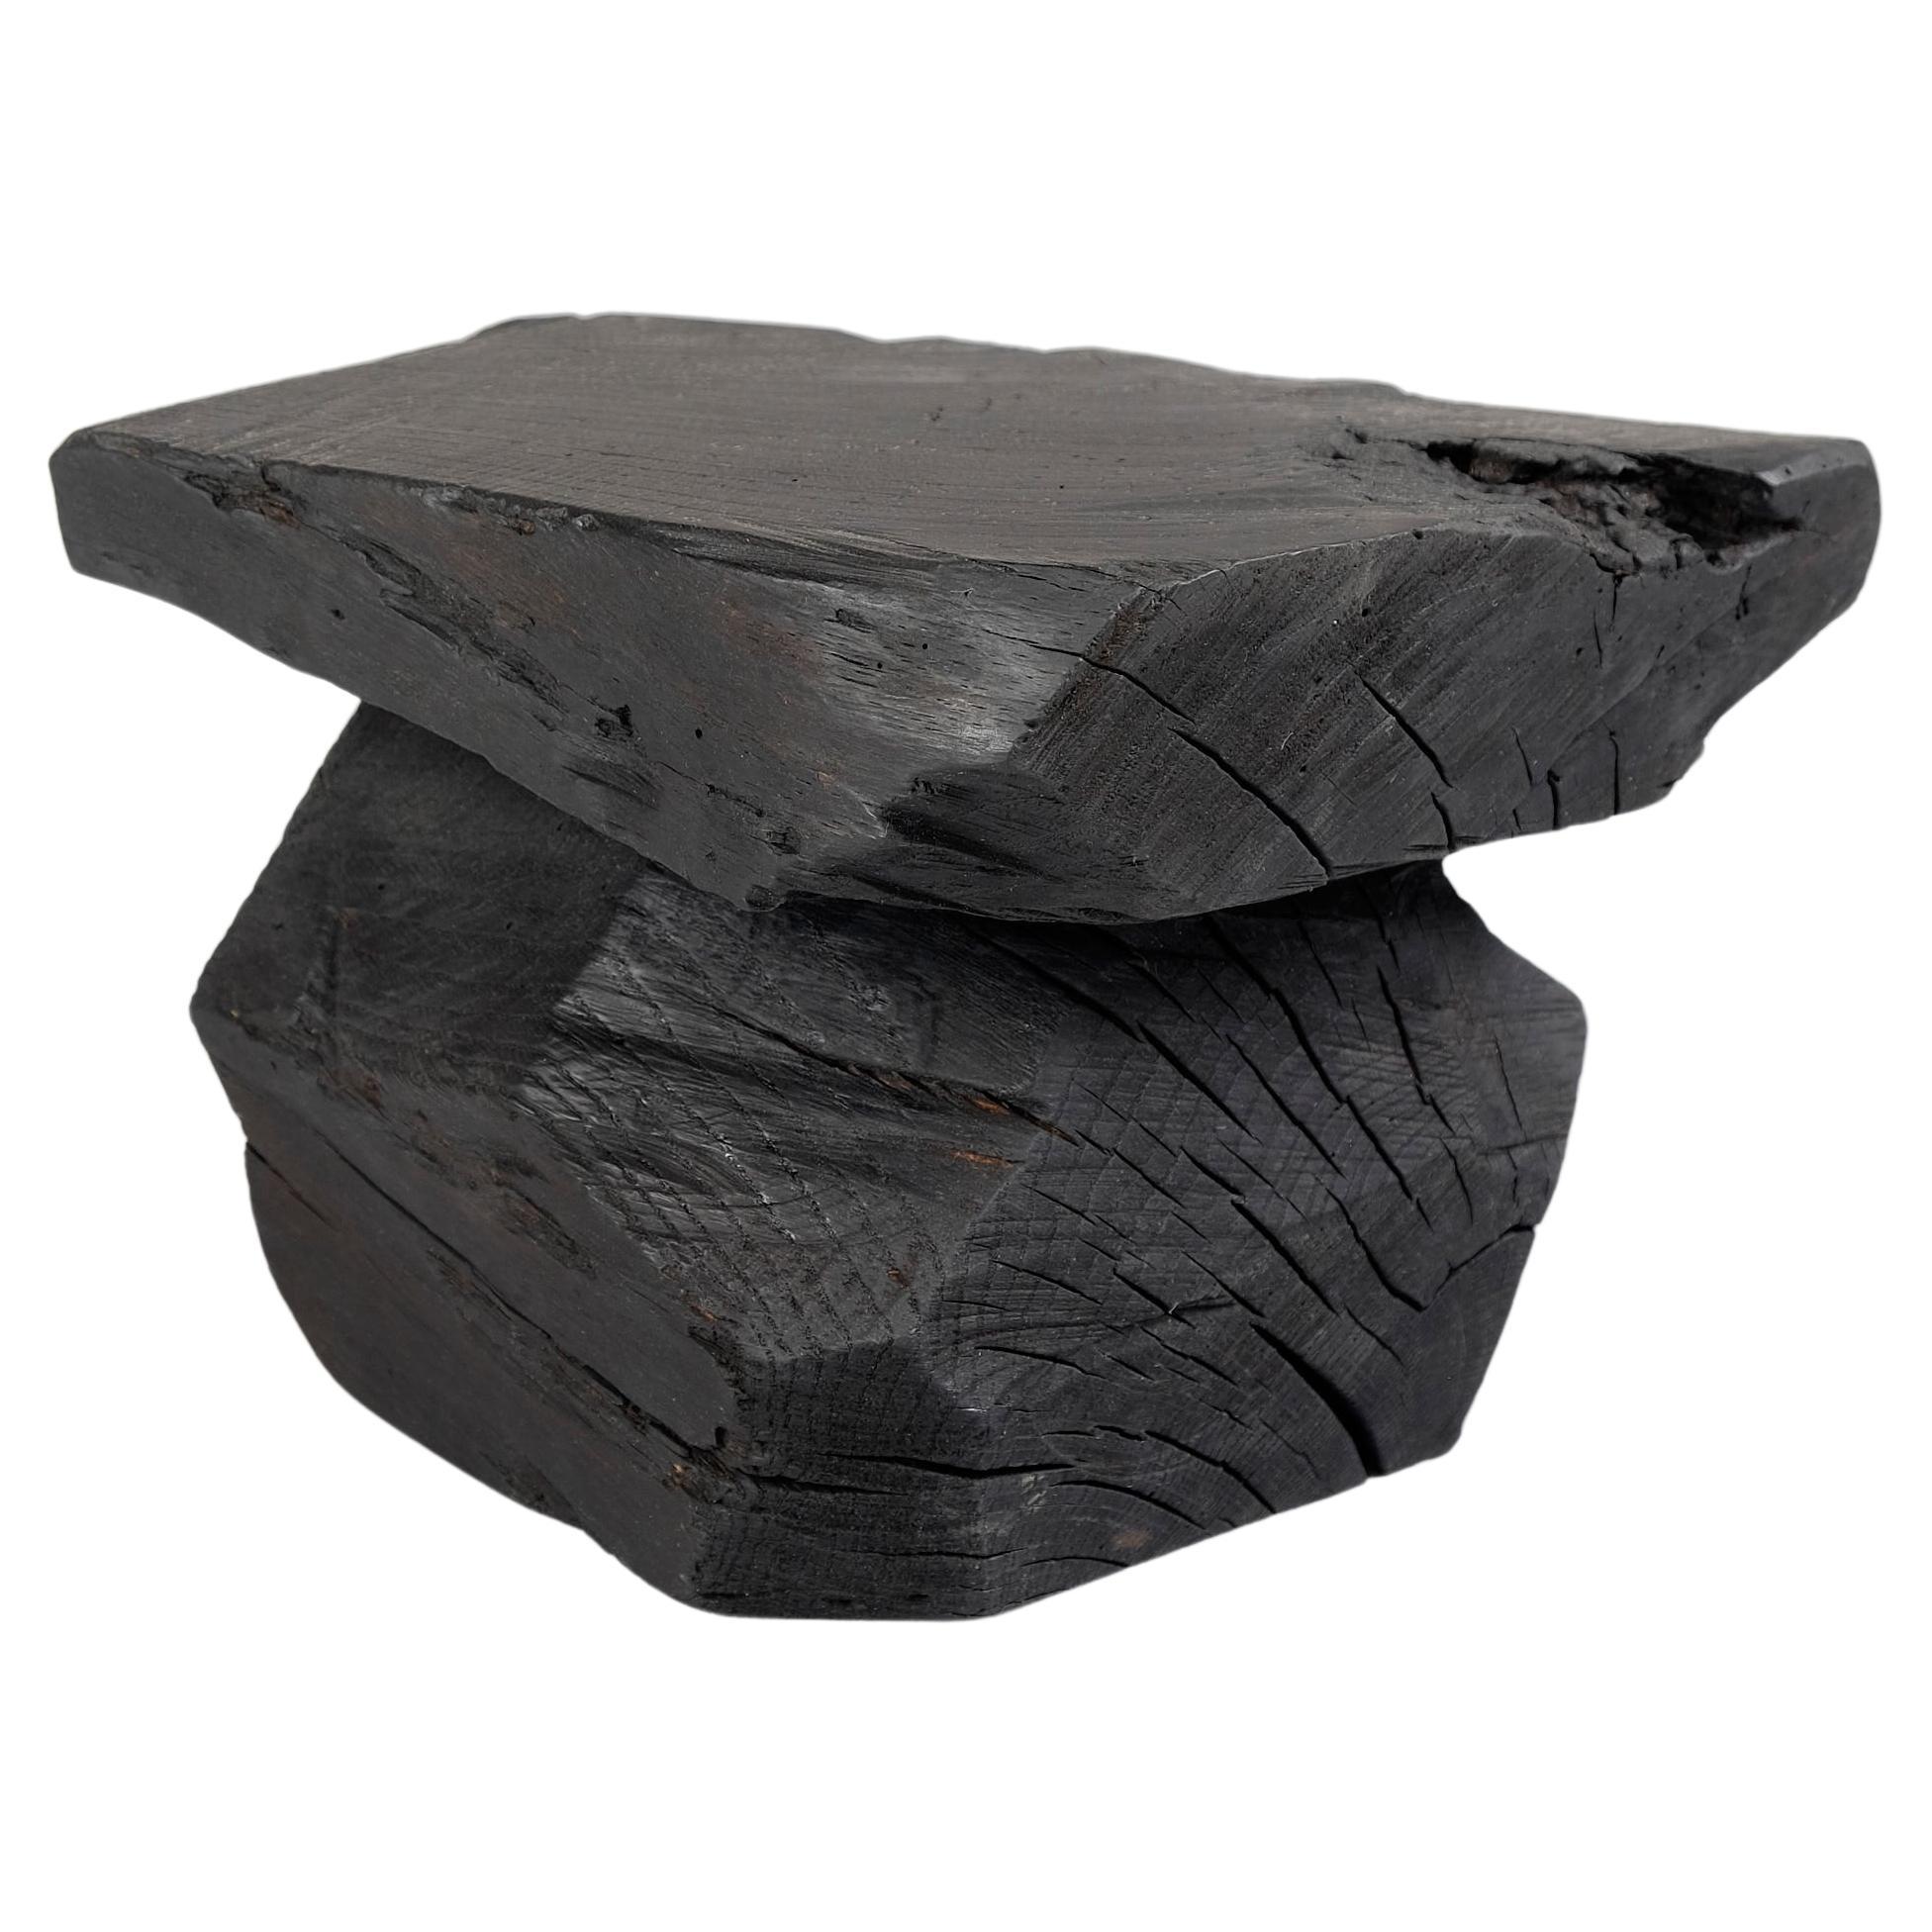 Solid Burnt Wood, Sculptural Stool/Side Table, Rock, Original Design, Logniture